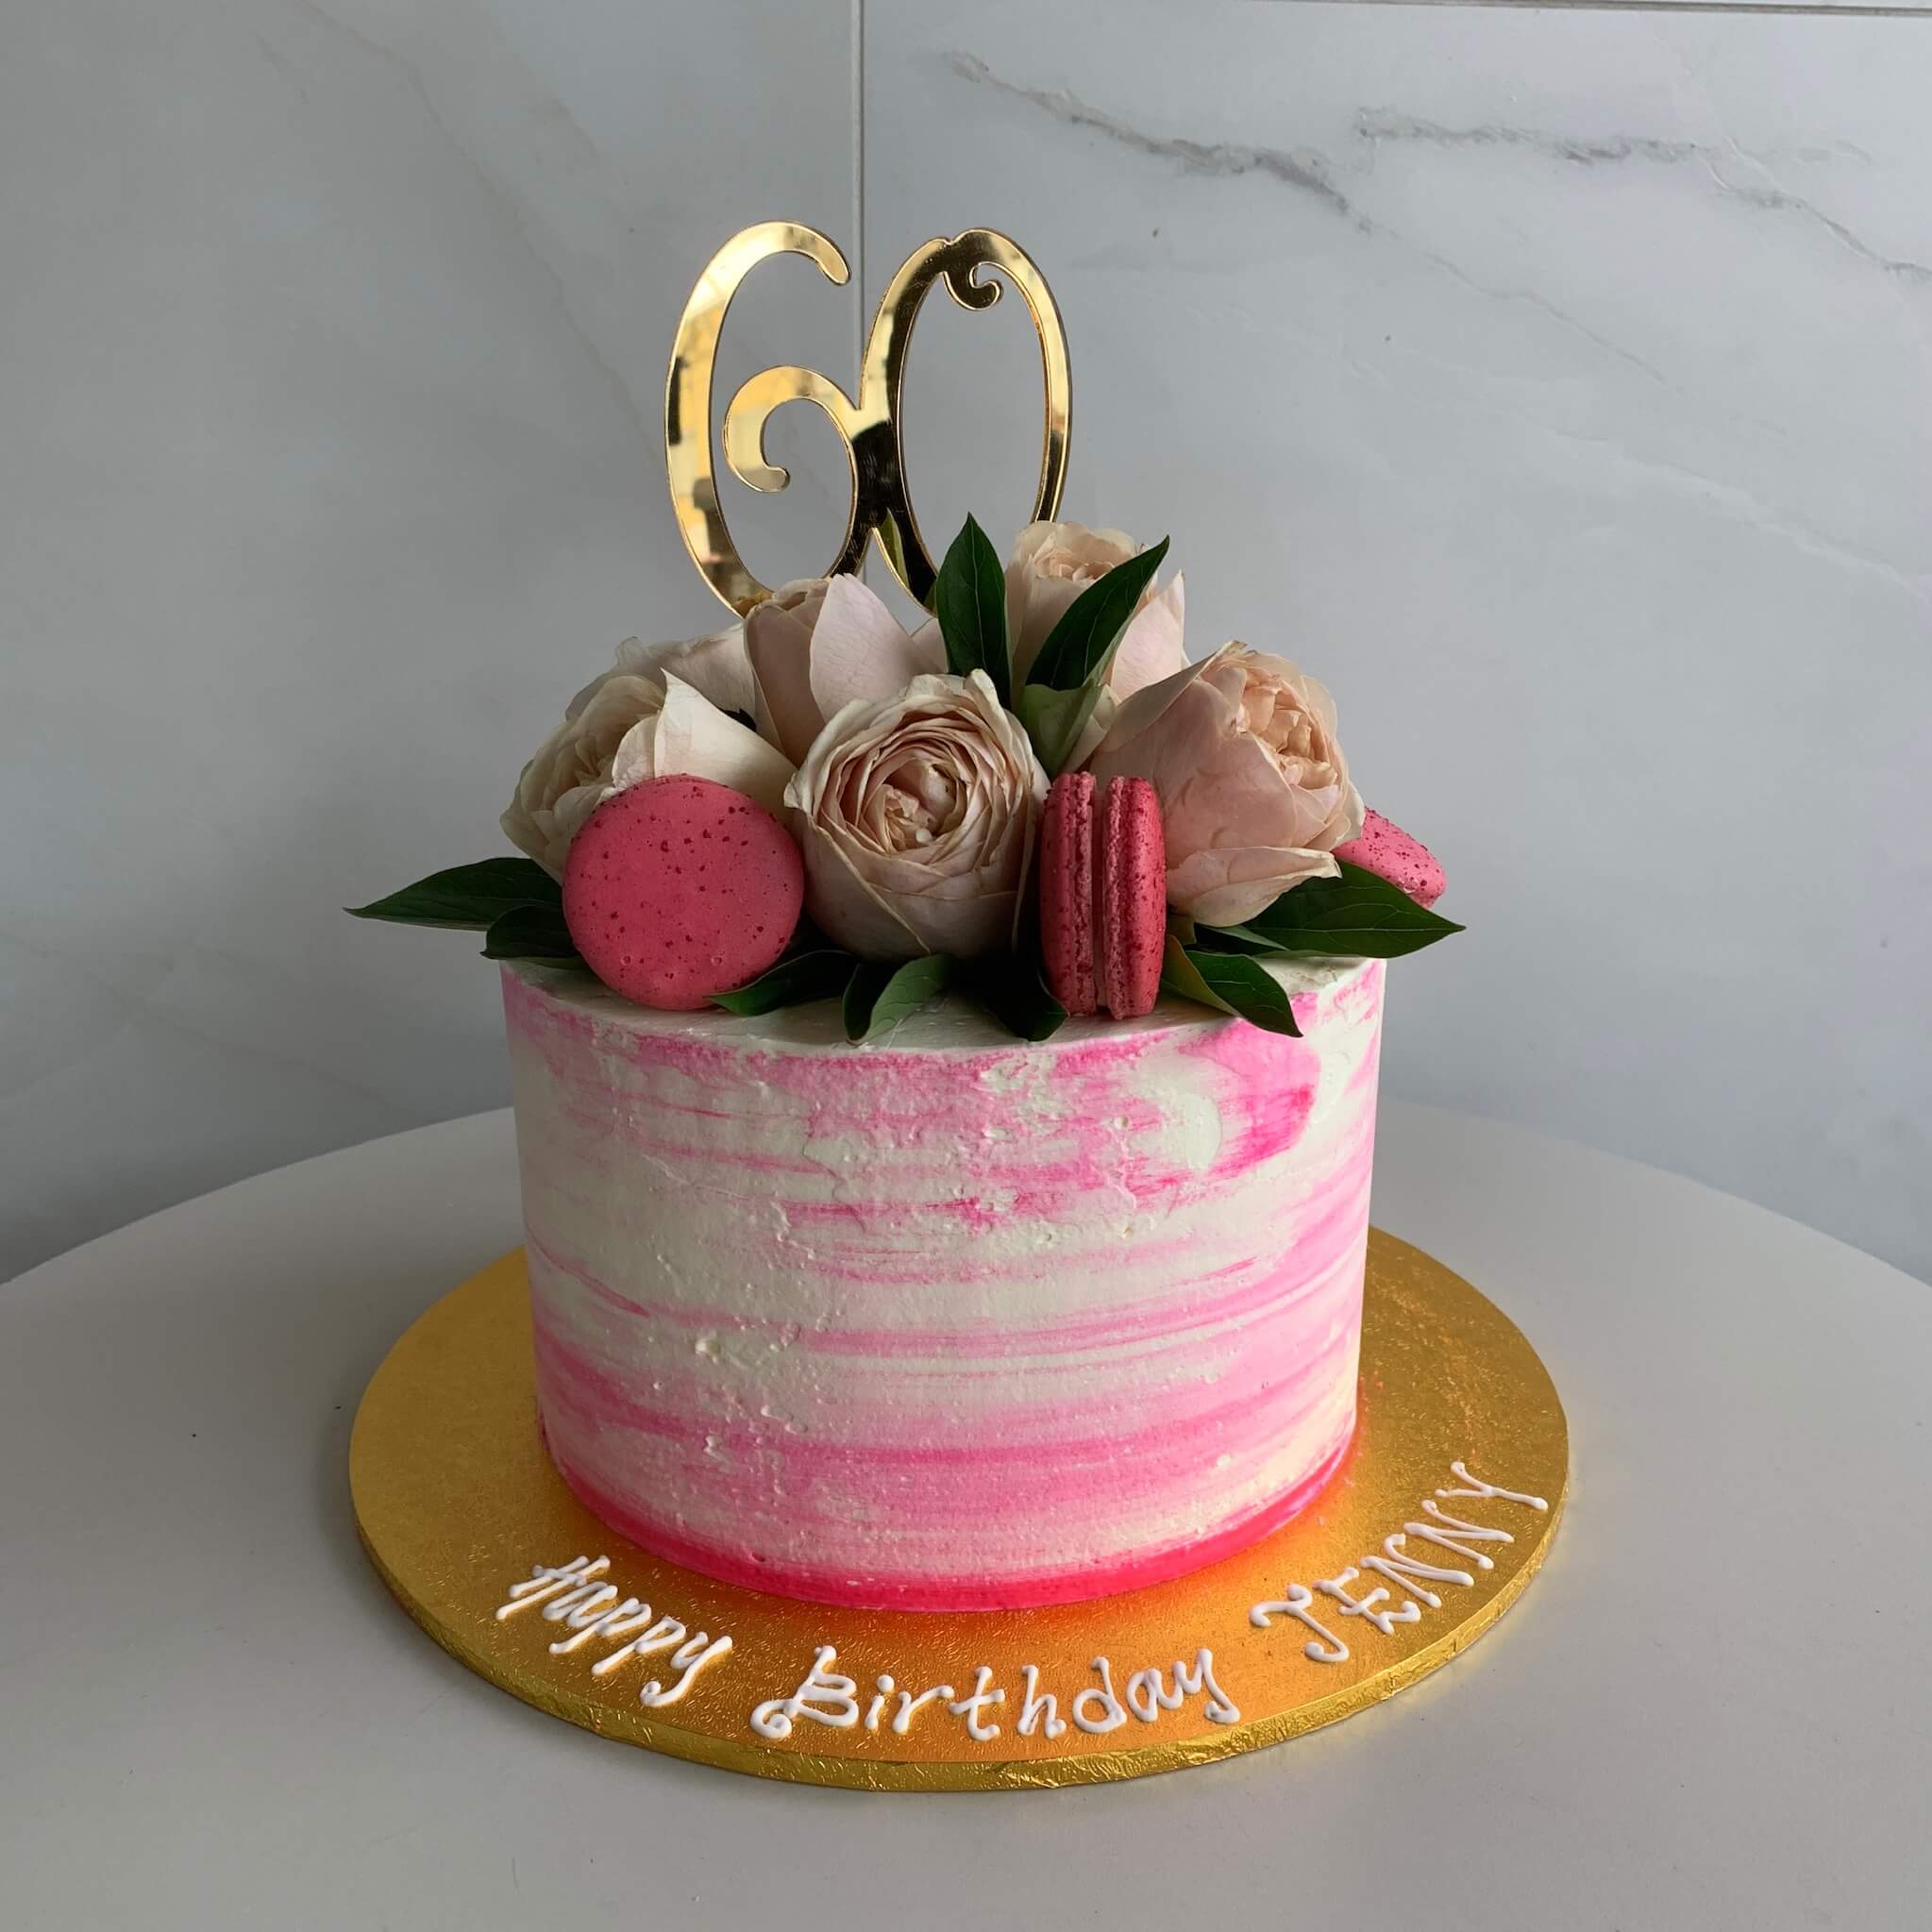 Happy Birthday Jenny Cake